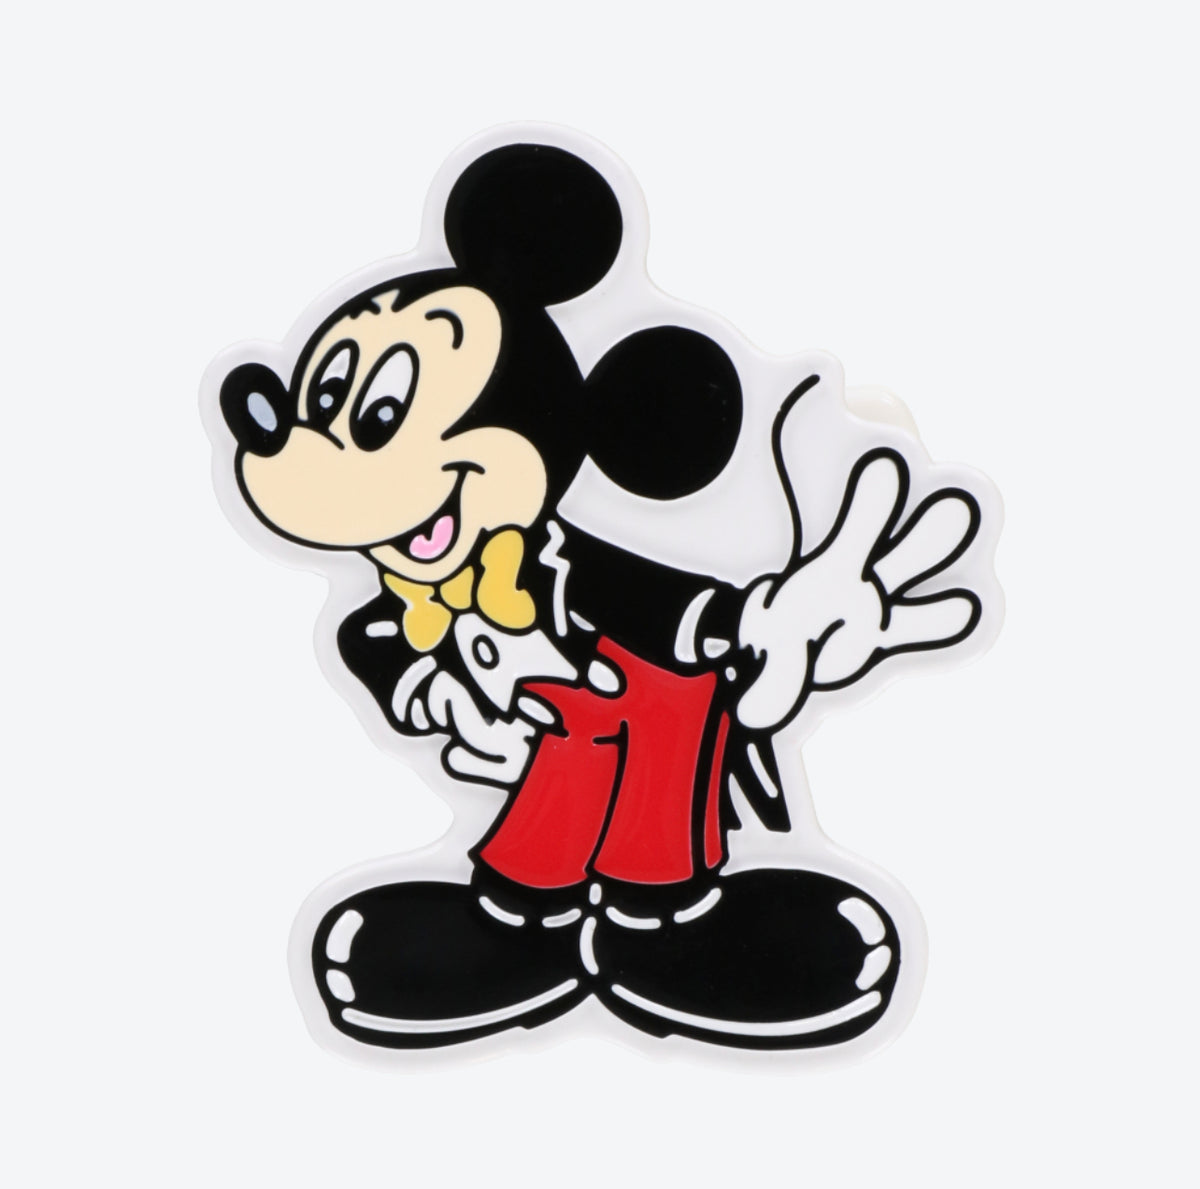 Buy Christmas Daisy Badge, Disney Mickey and Friends Badge, Daisy